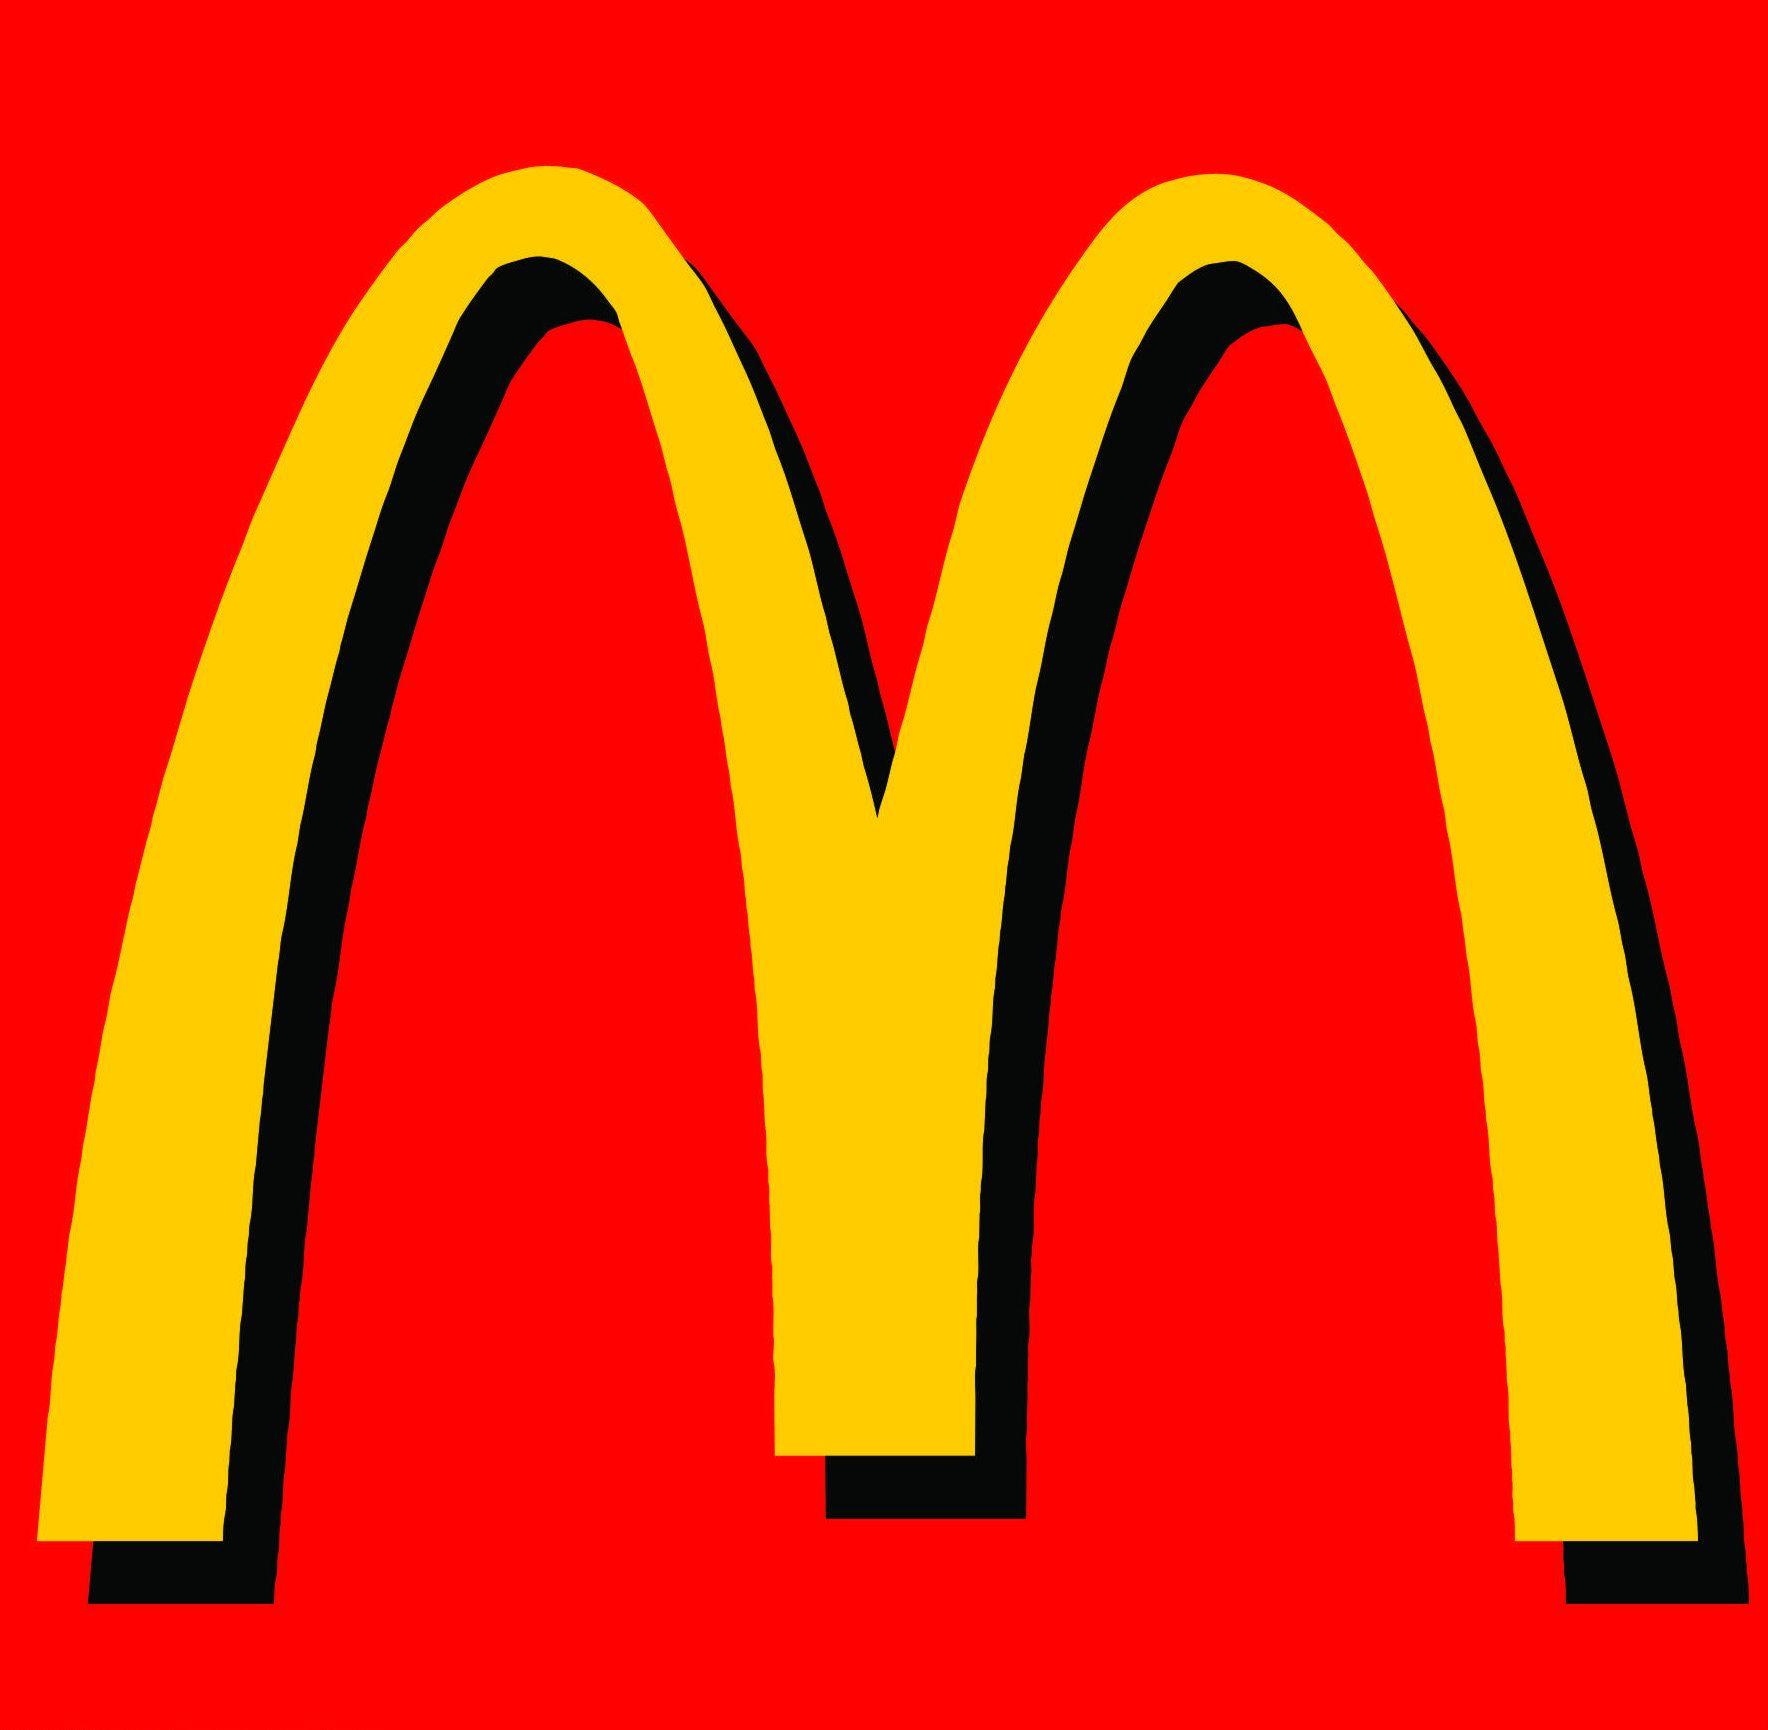 Red with Yellow D Logo - Mac d Logos